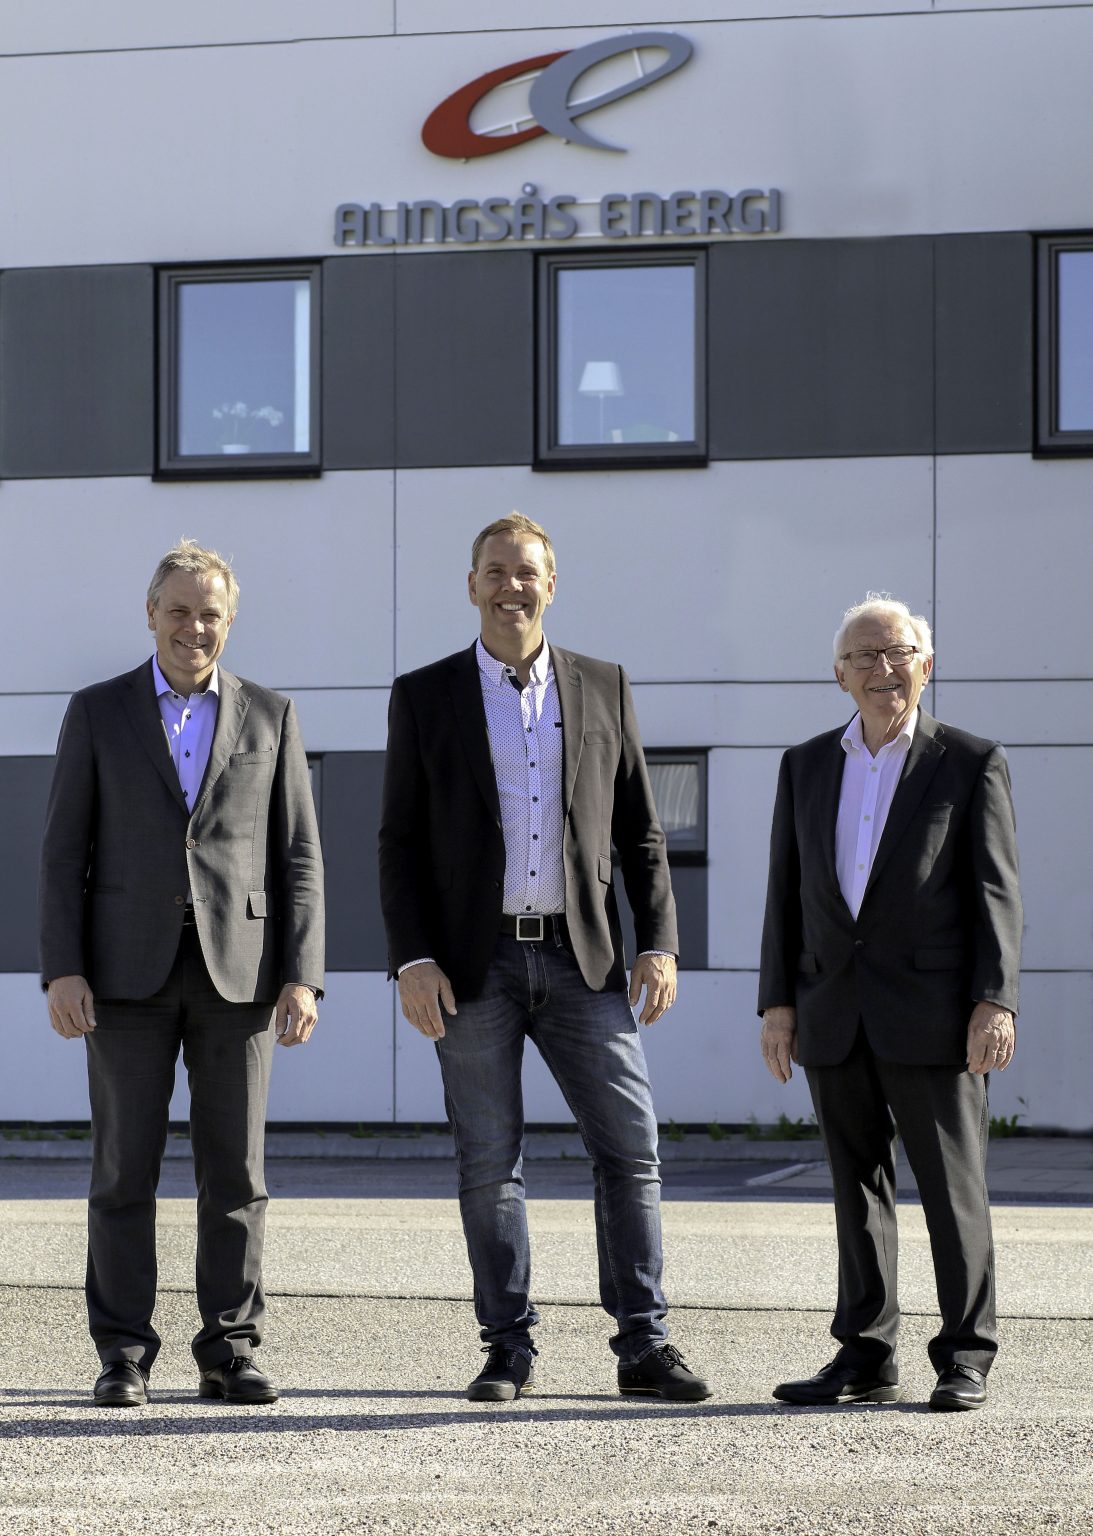 Tre män framför Alingsås energi kontor.